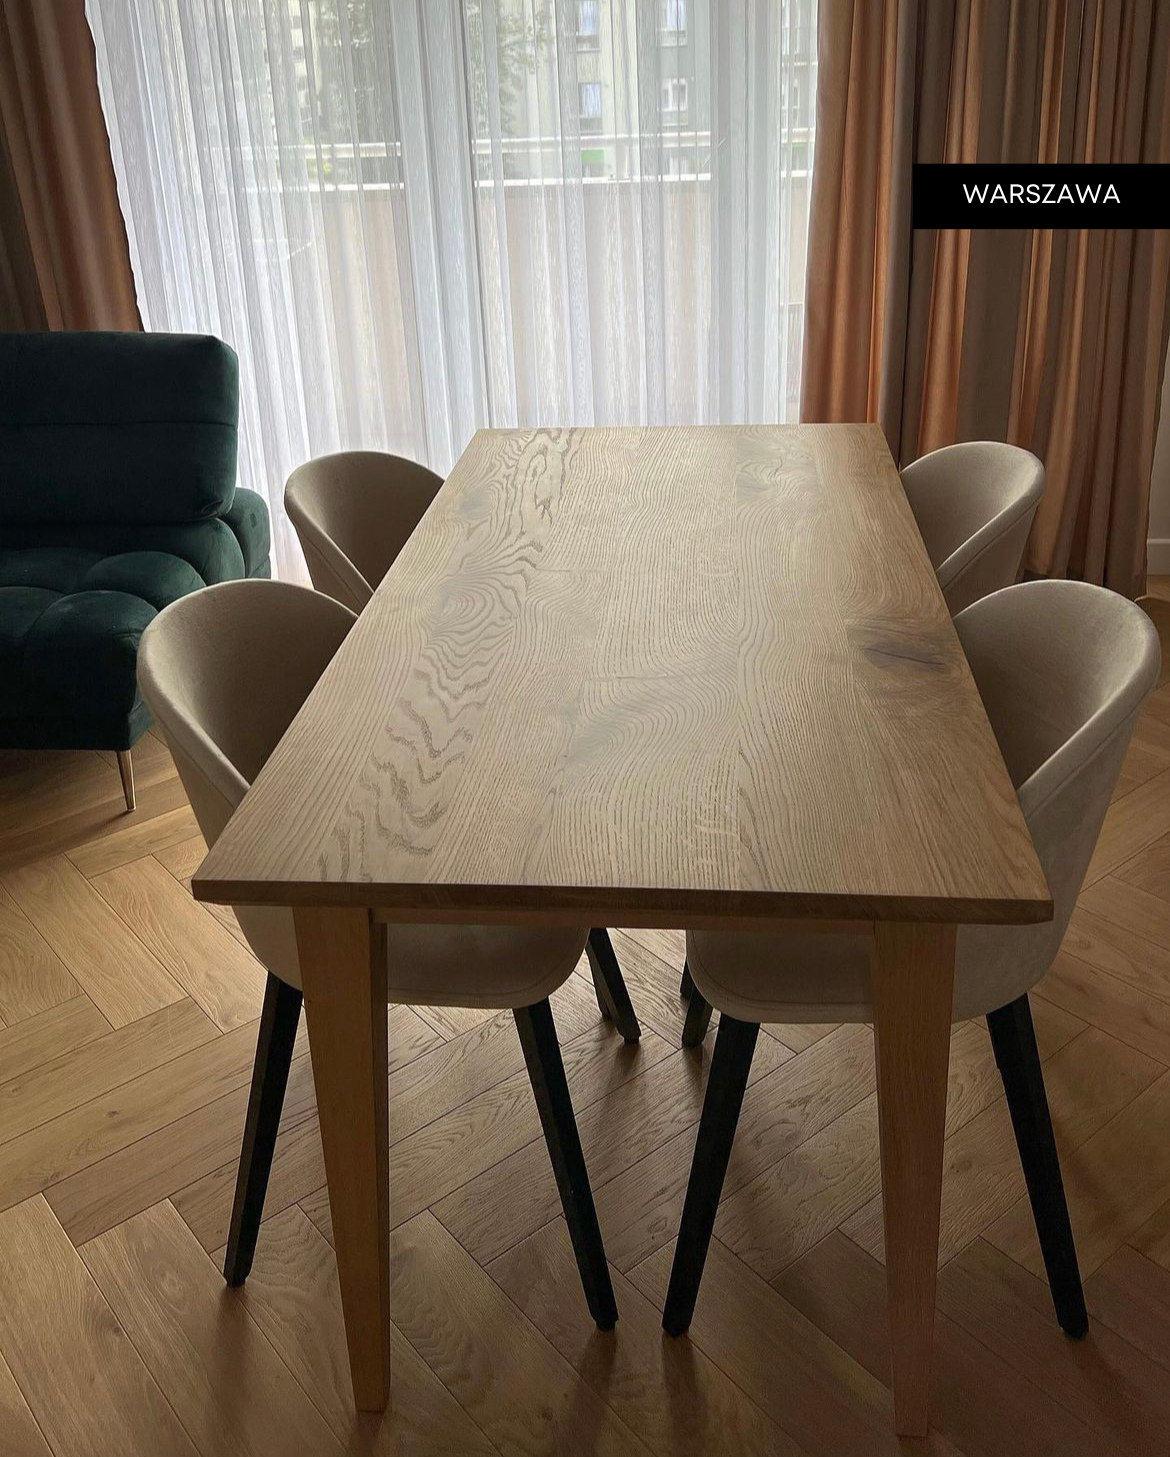 "stół dębowy PLATO - meble drewniane na wymiar - loftowe, industrialne, skandynawskie”